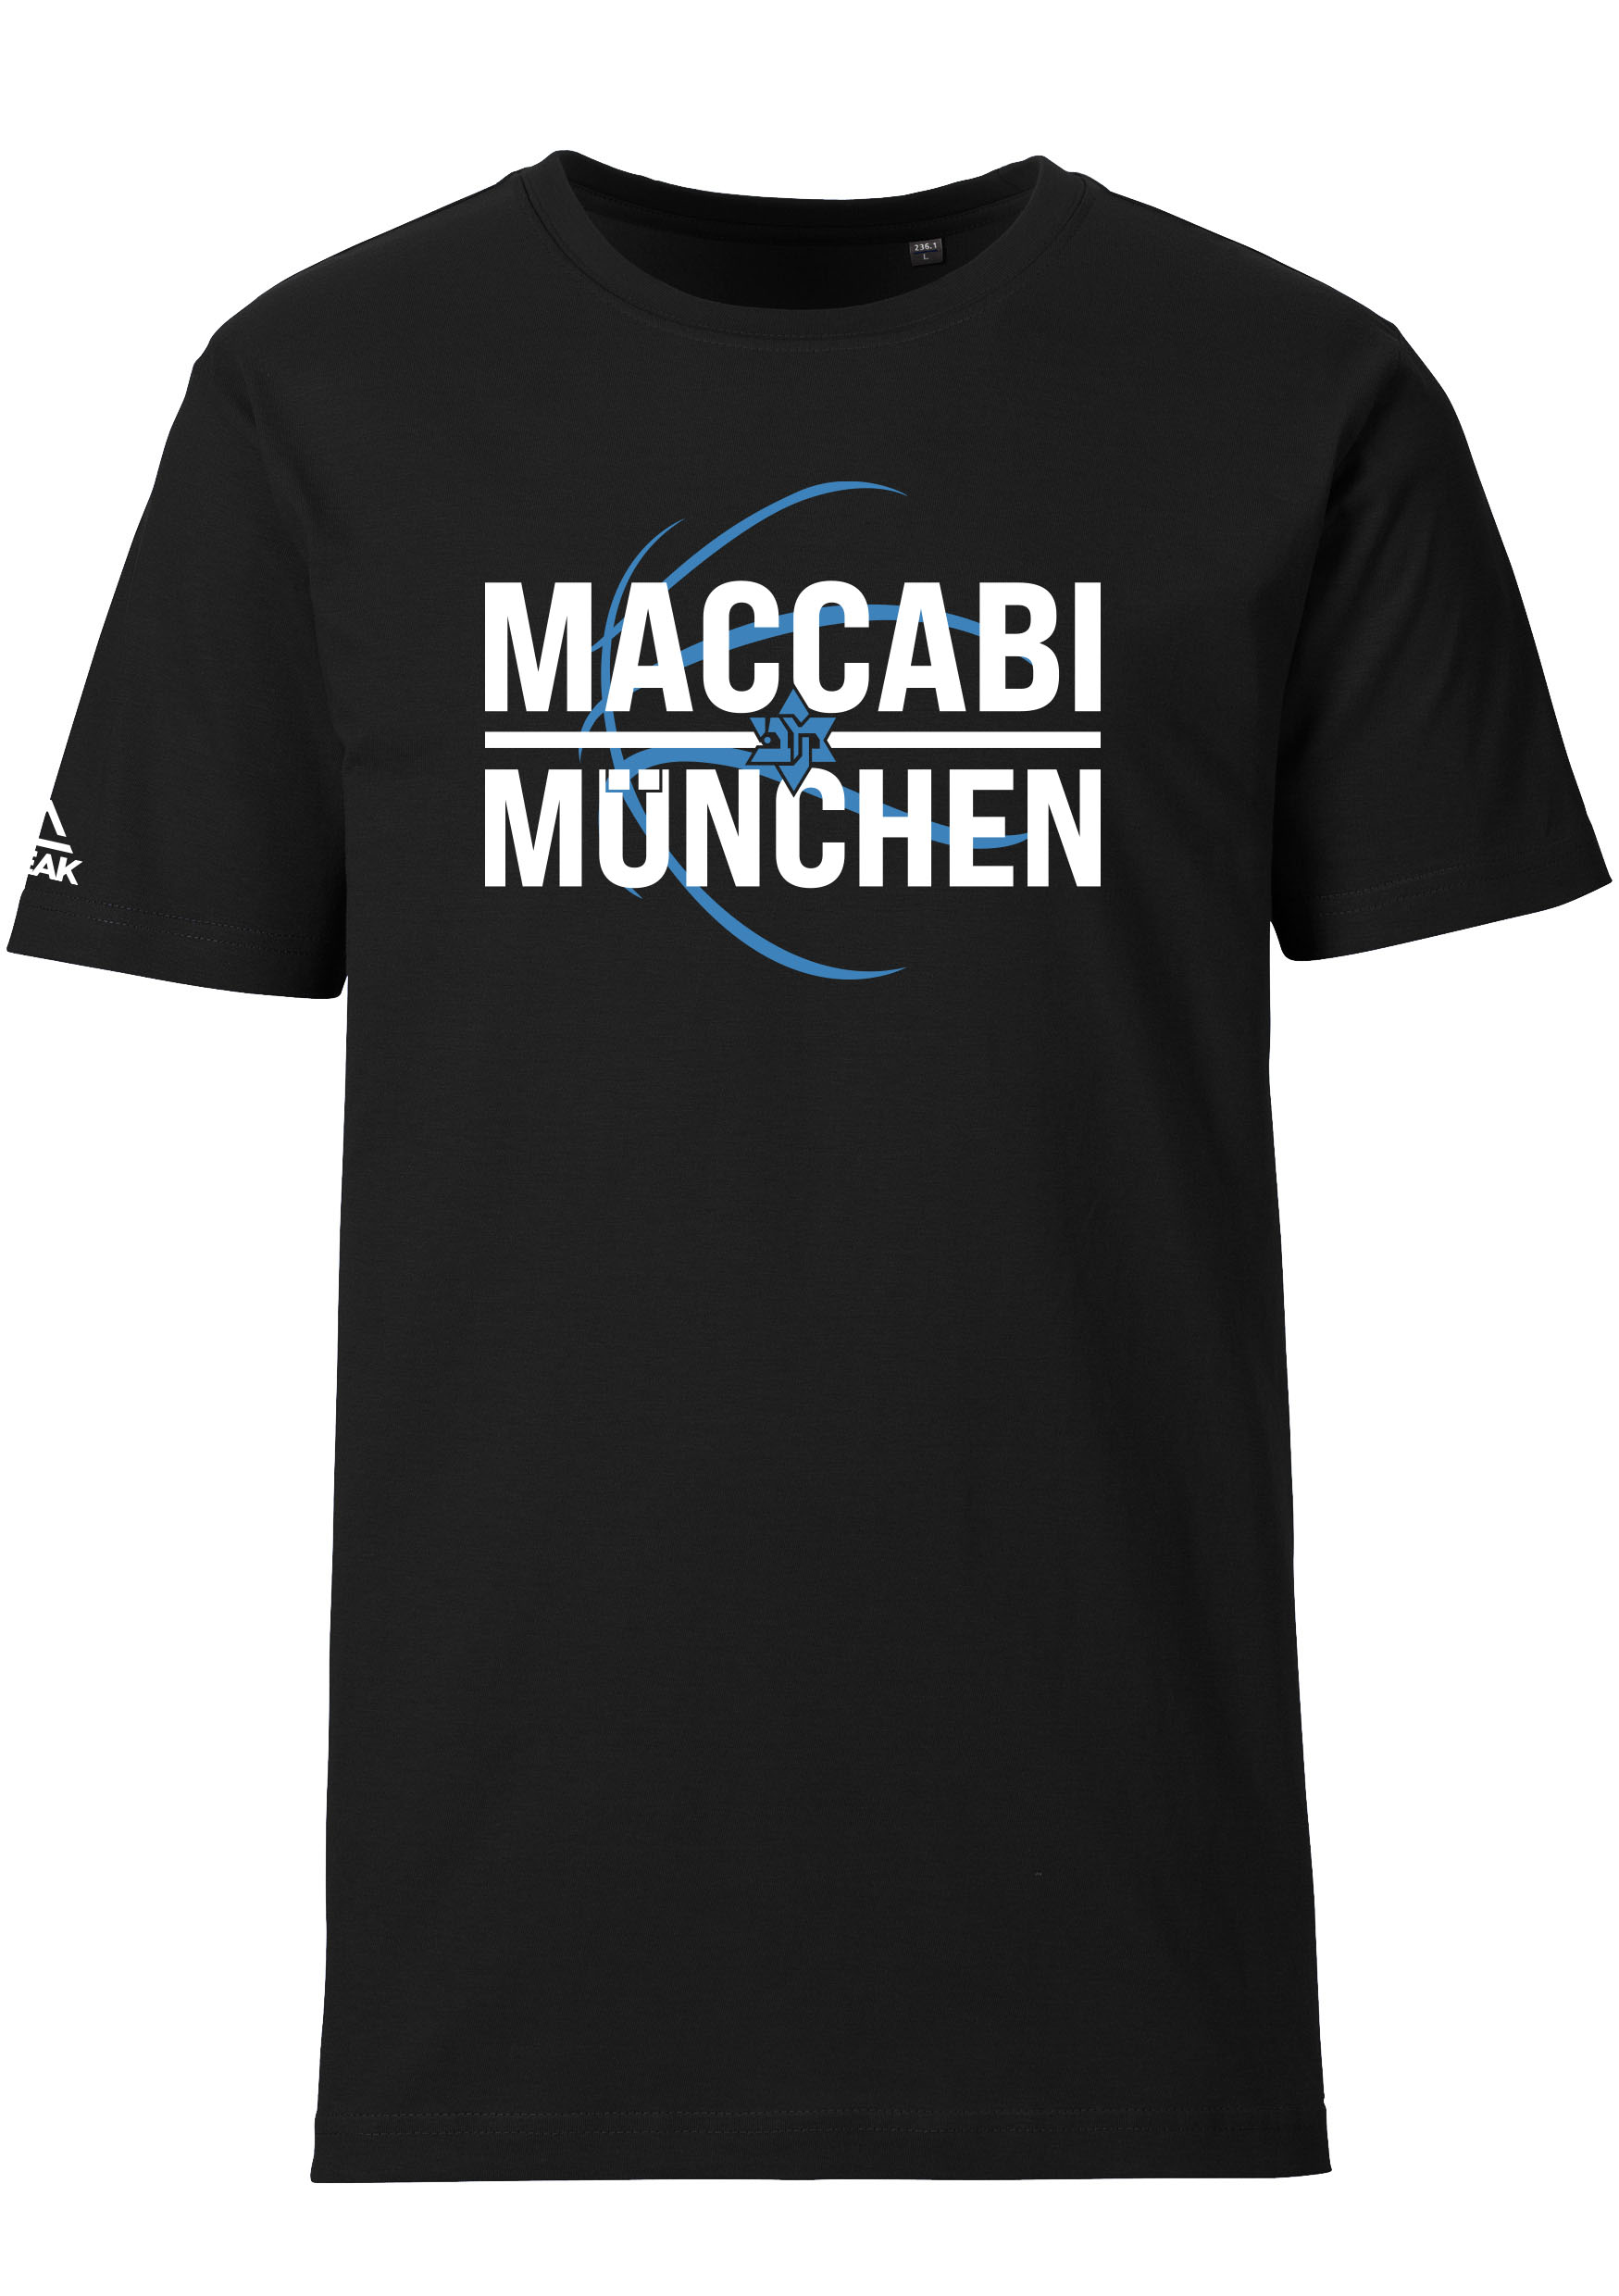 Maccabi München T-Shirt Kids